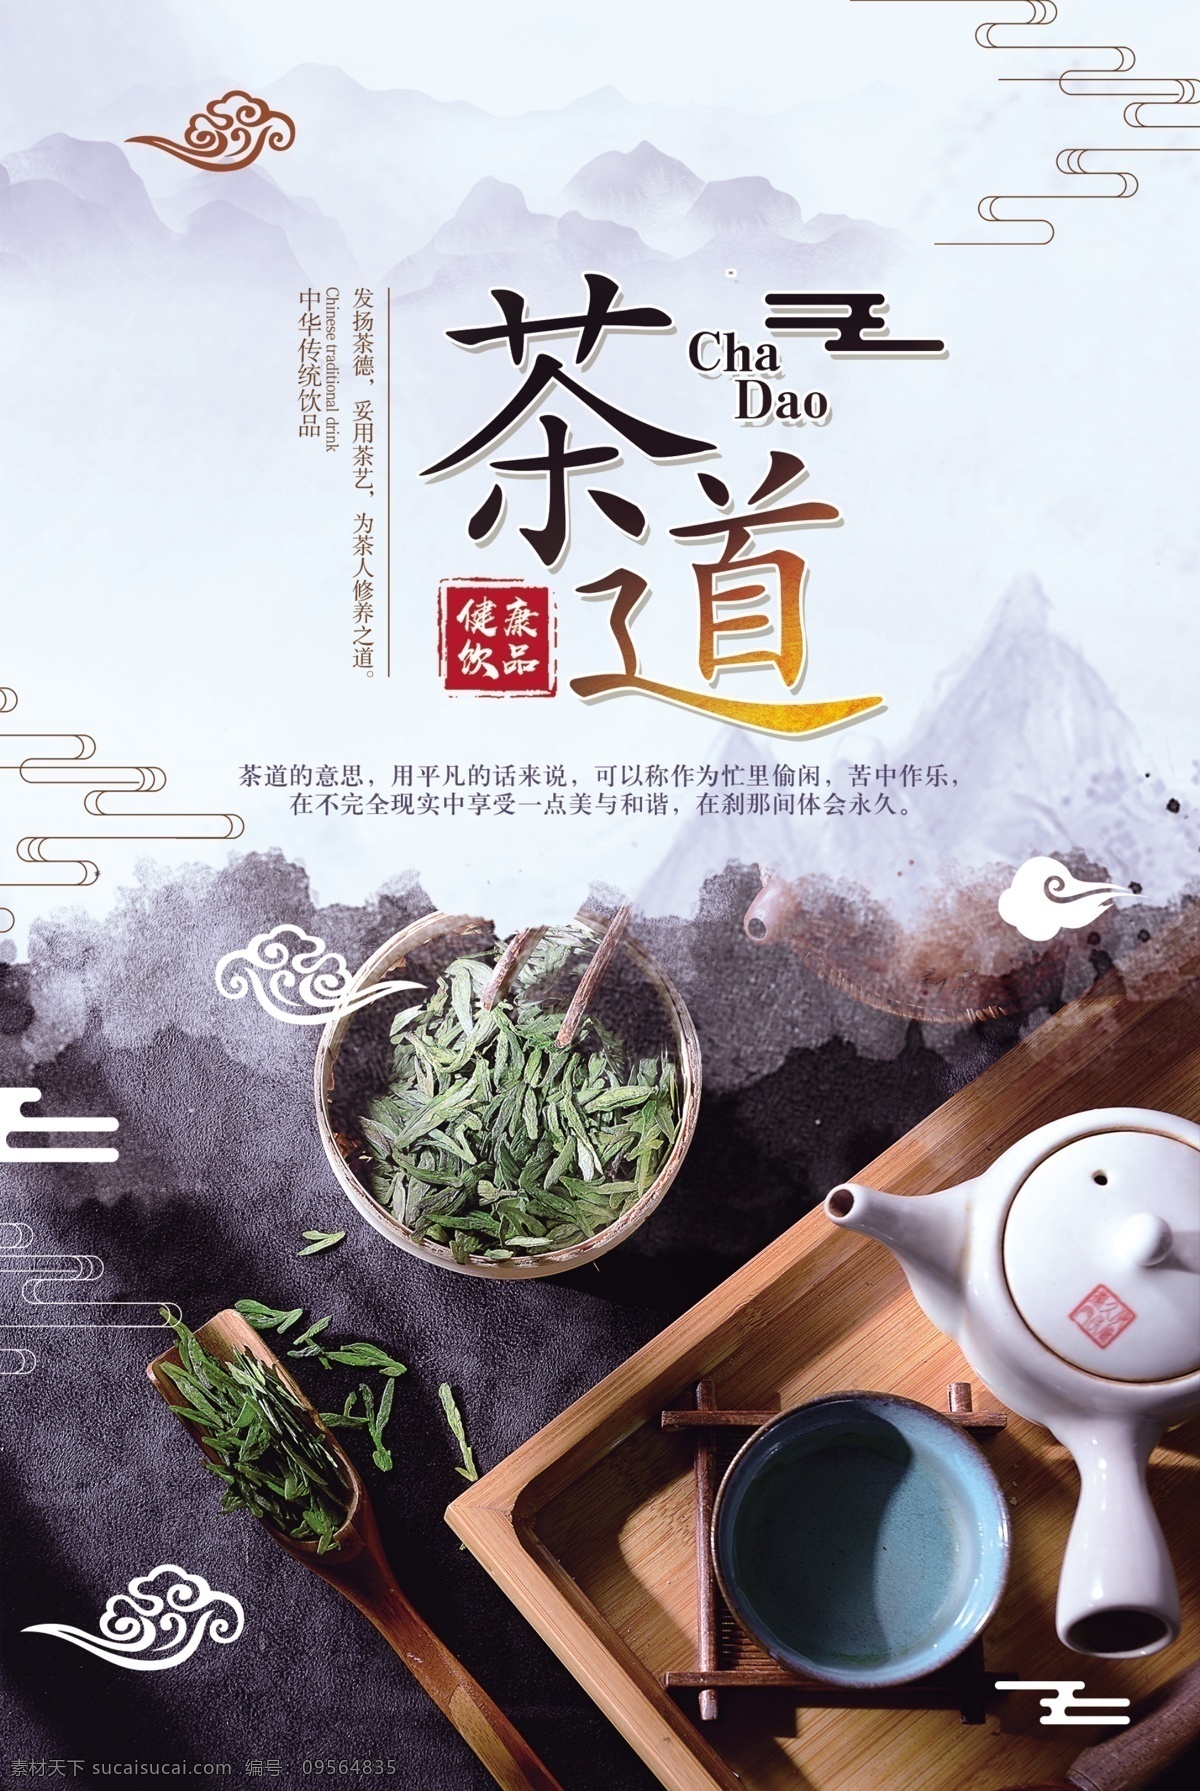 茶道 传统文化 活动 宣传海报 传统 文化 宣传 海报 社会 公益